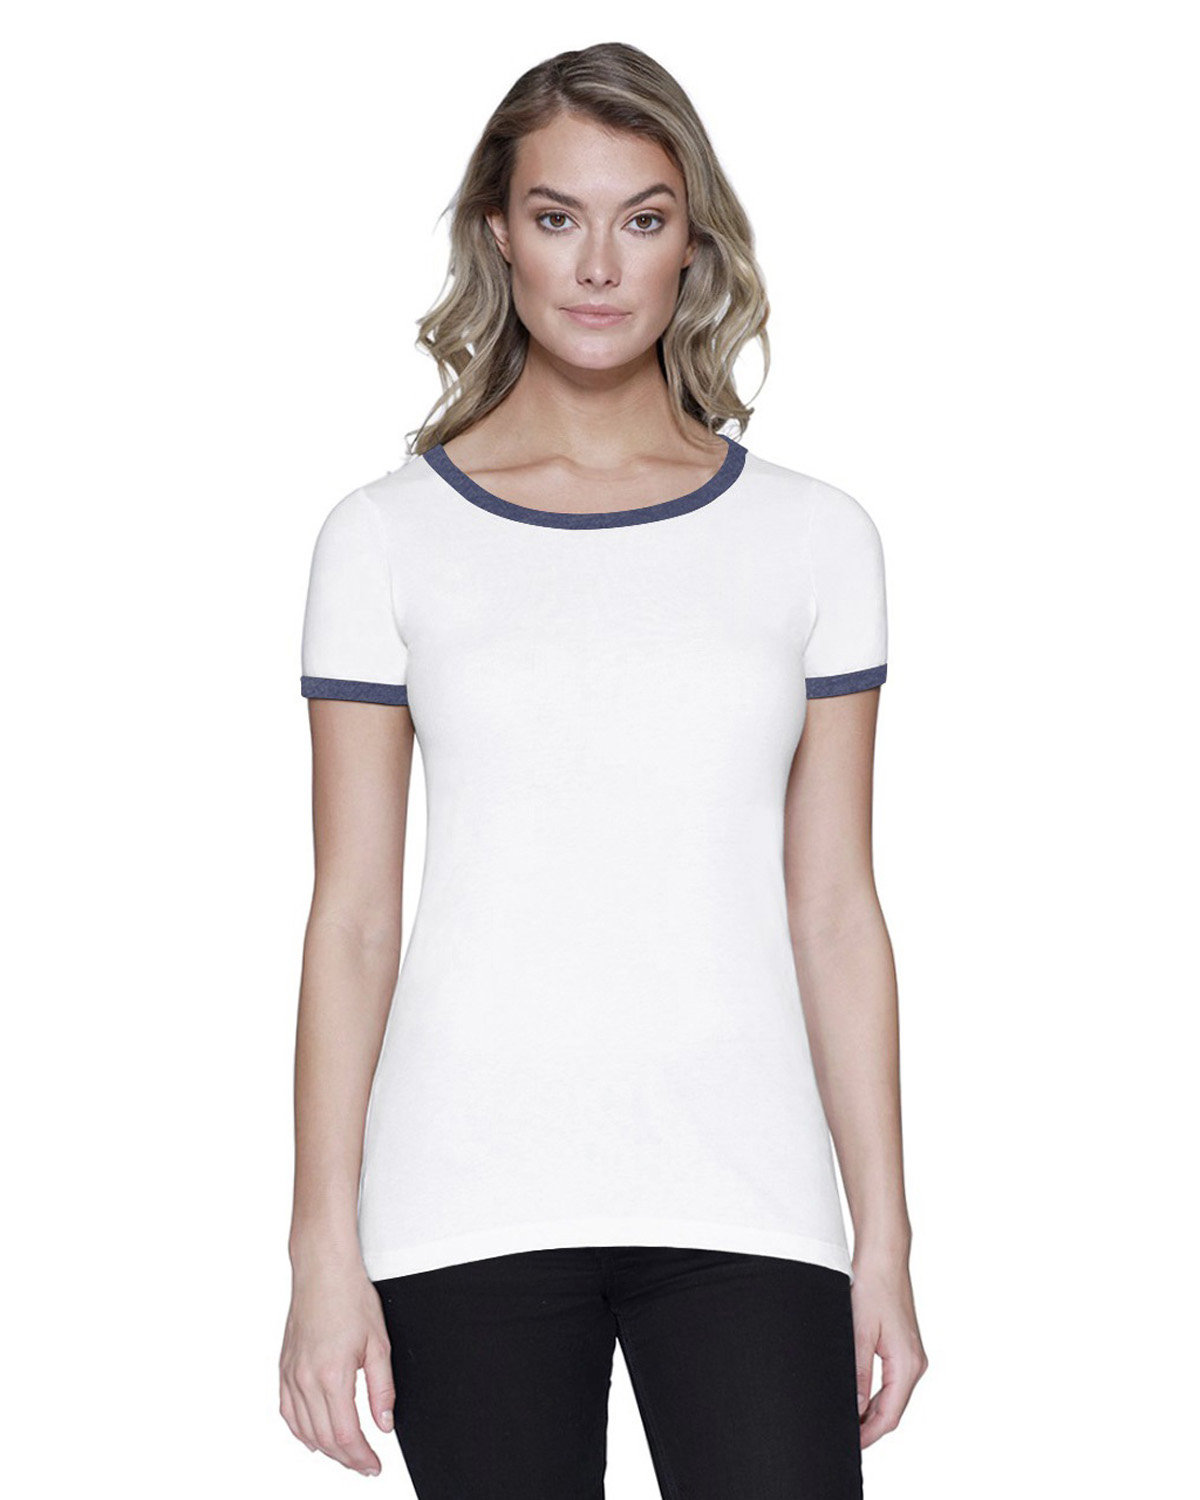 StarTee Ladies' CVC Ringer T-Shirt WHITE/ NAVY HTHR 